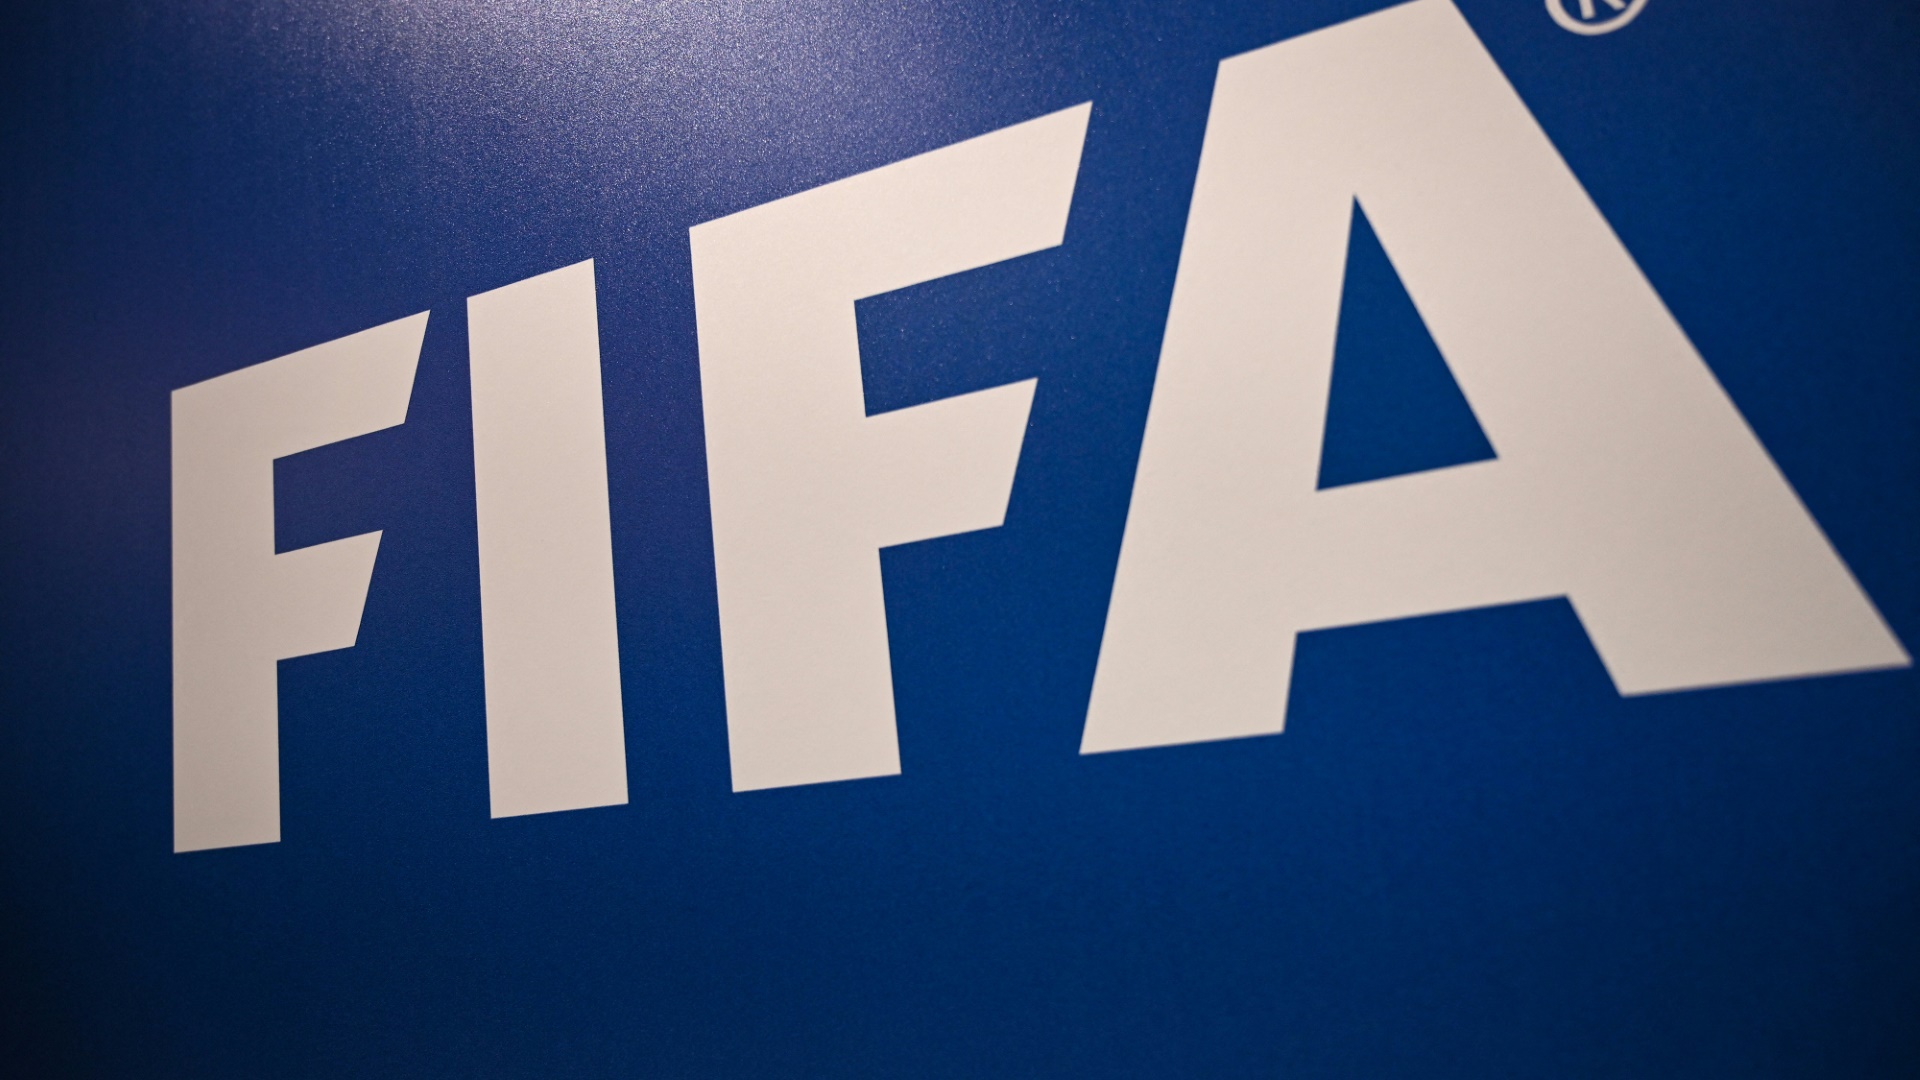 Kritik an WM-Vergabeprozess der FIFA